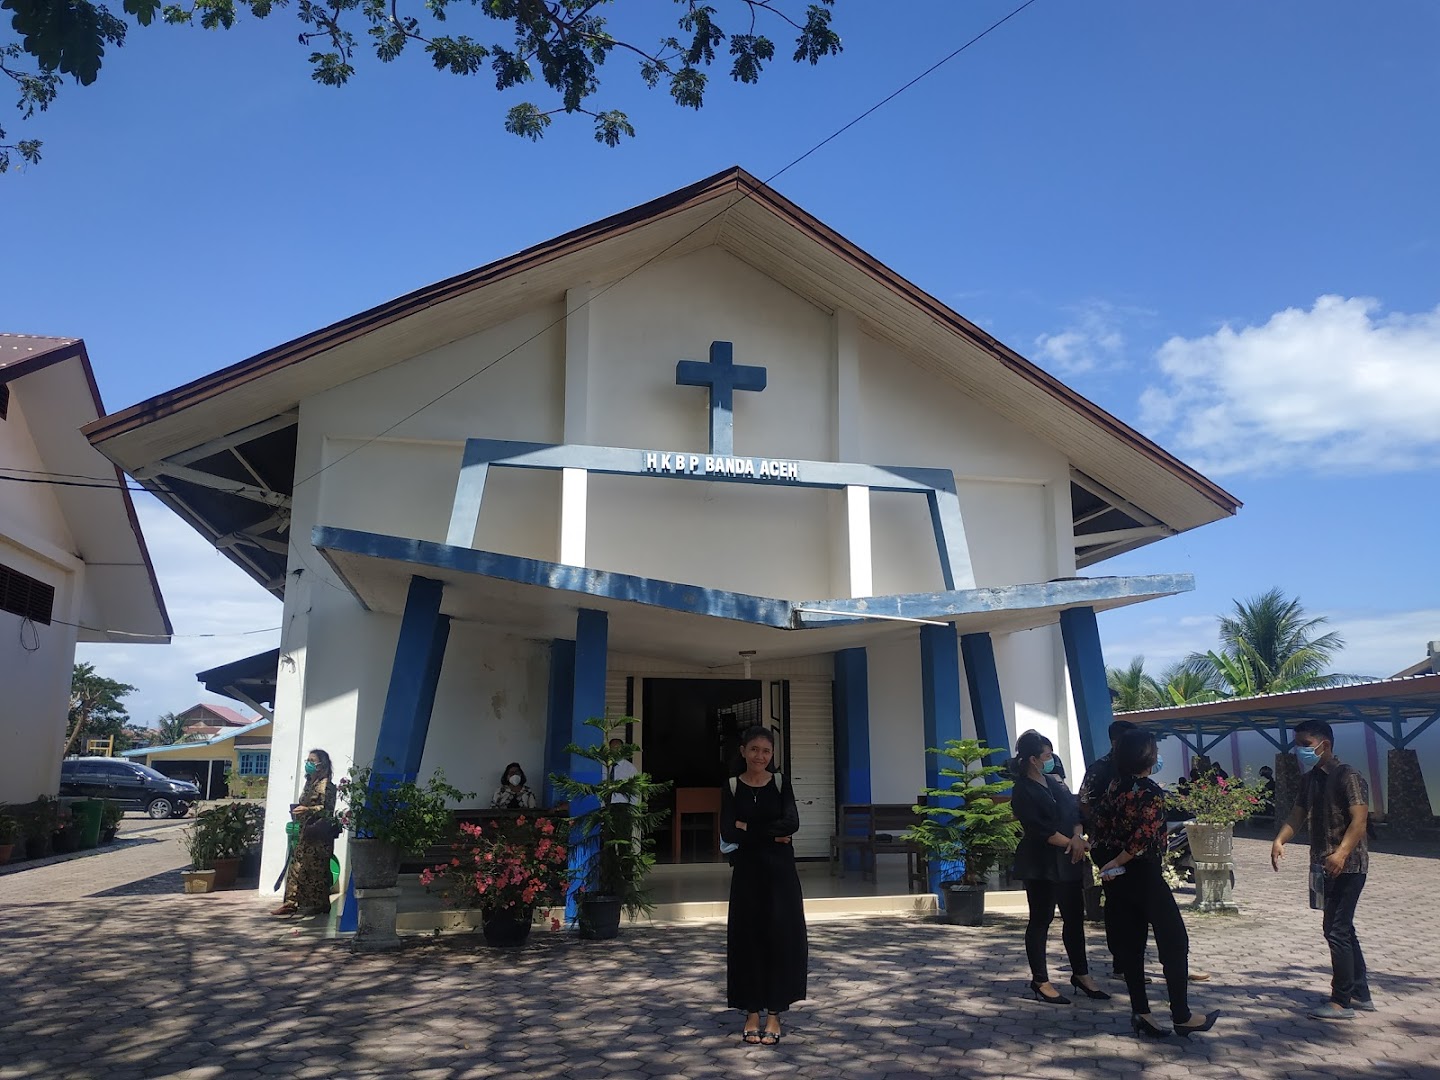 Gambar Gereja Hkbp Banda Aceh